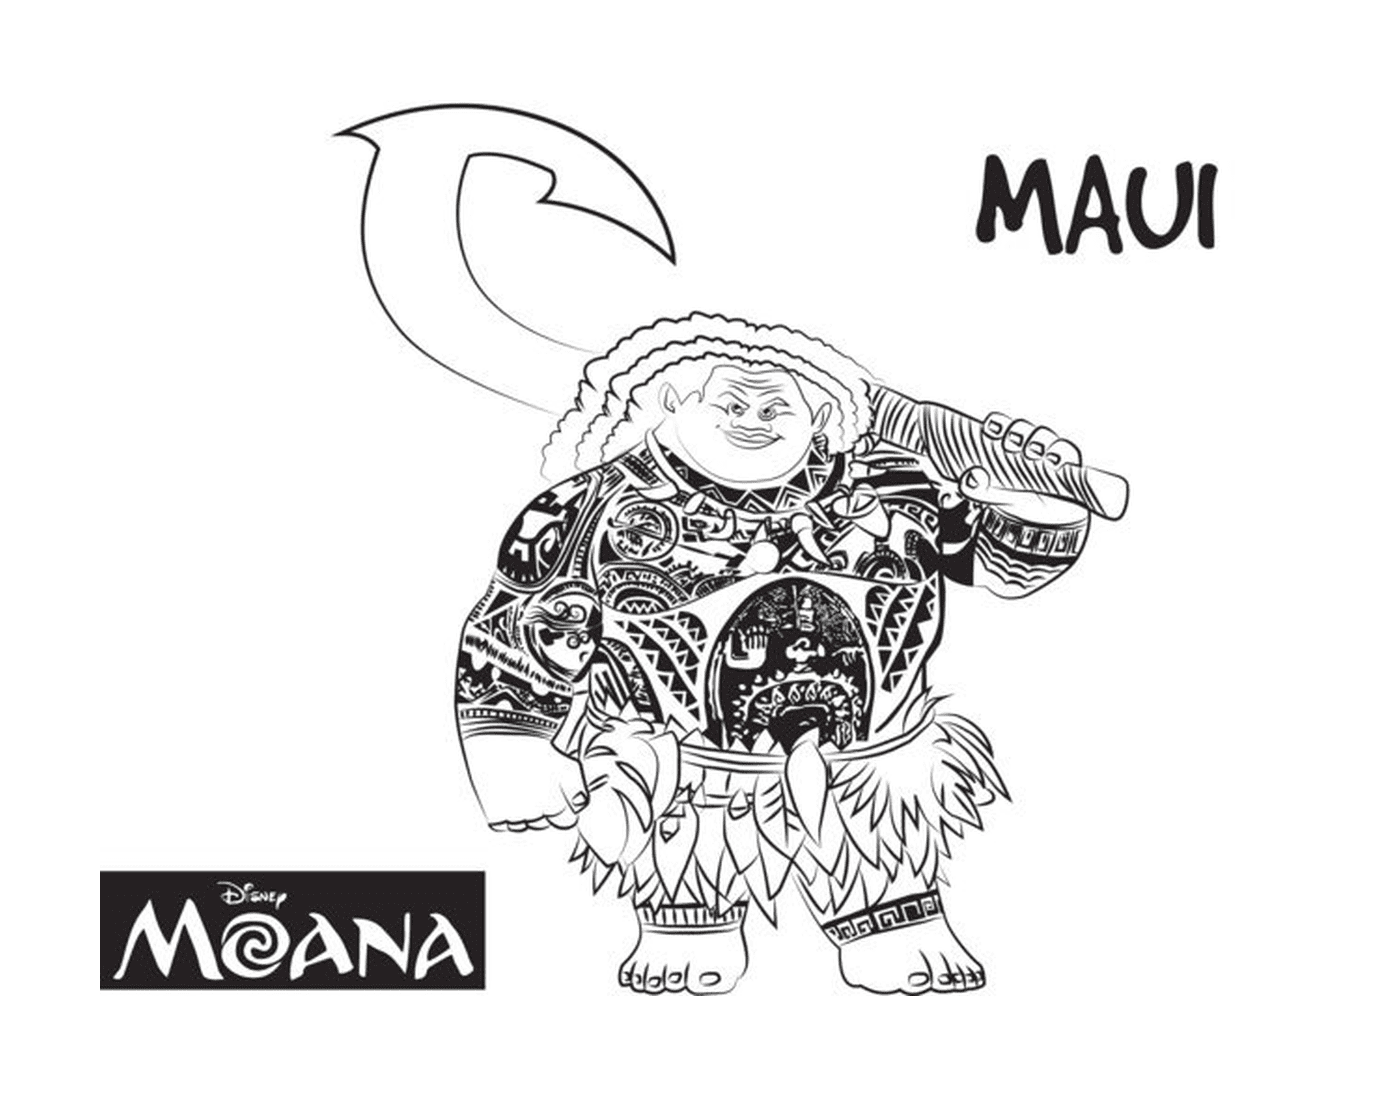  Maui, hombre fuerte de Moana 